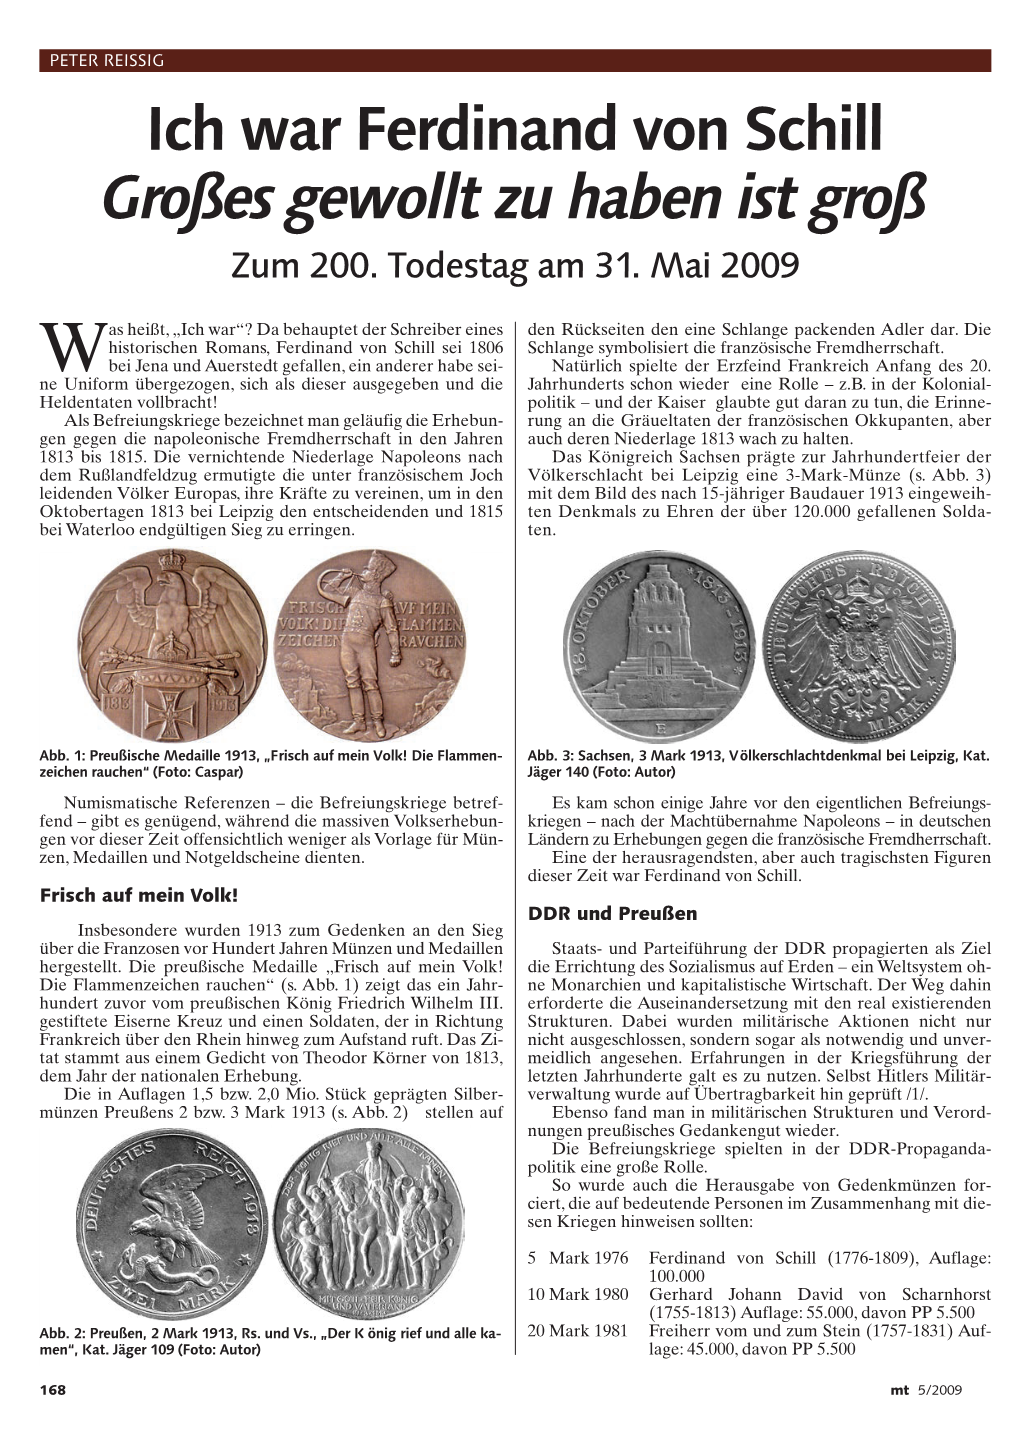 Ferdinand Von Schill!:MT-Muster 2005 10.04.09 13:47 Seite 168